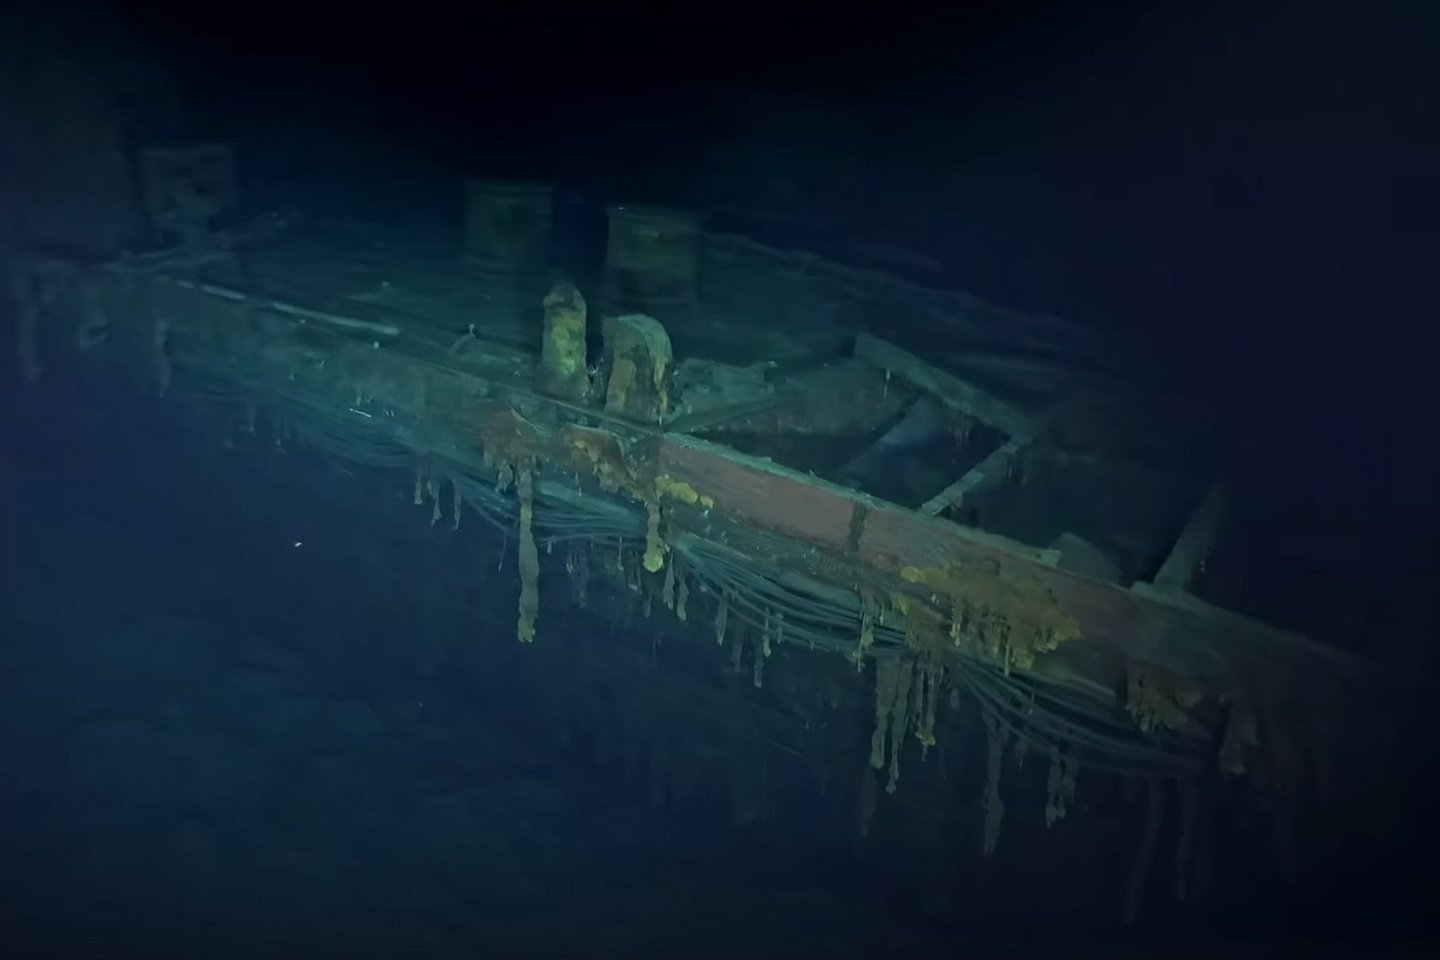  Grupė jūrų gelmių tyrinėtojų ir istorijų, ieškančių per Antrąjį pasaulinį karą prarastų laivų, rado antrą japonų lėktuvnešį, nuskandintą per istorinį Midvėjaus mūšį.<br>„Vulcan Inc.“ reportažo stop-kadras.